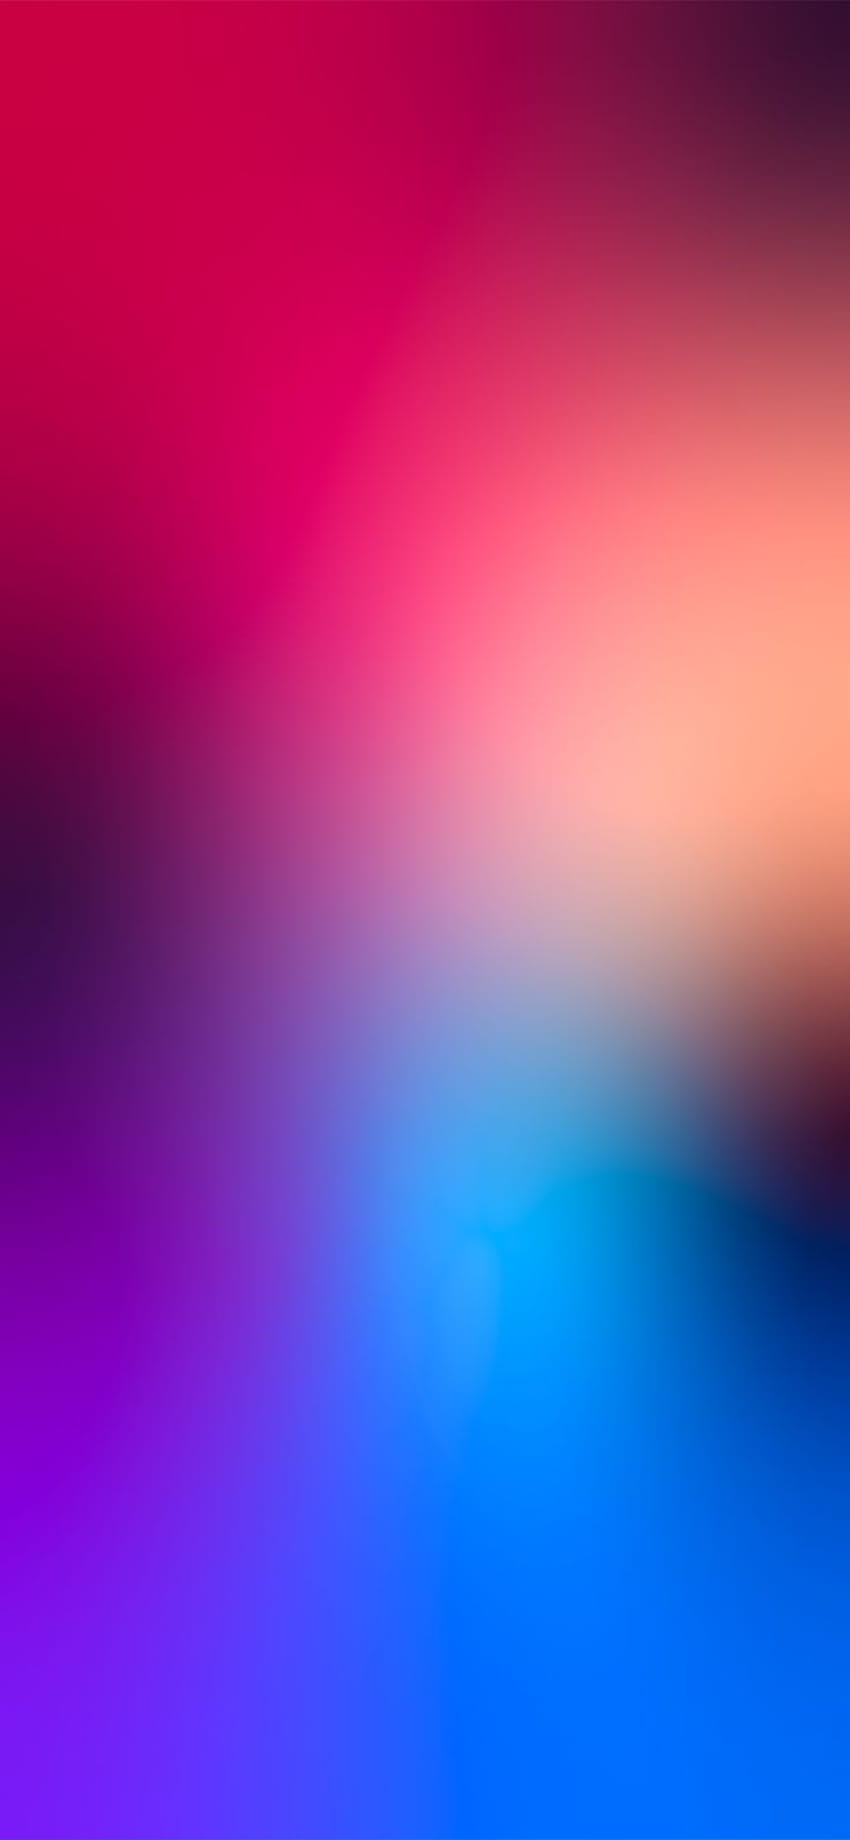 żywy kolorowy gradient autorstwa Hk3ToN, najlepszego iPhone'a z gradientem Tapeta na telefon HD